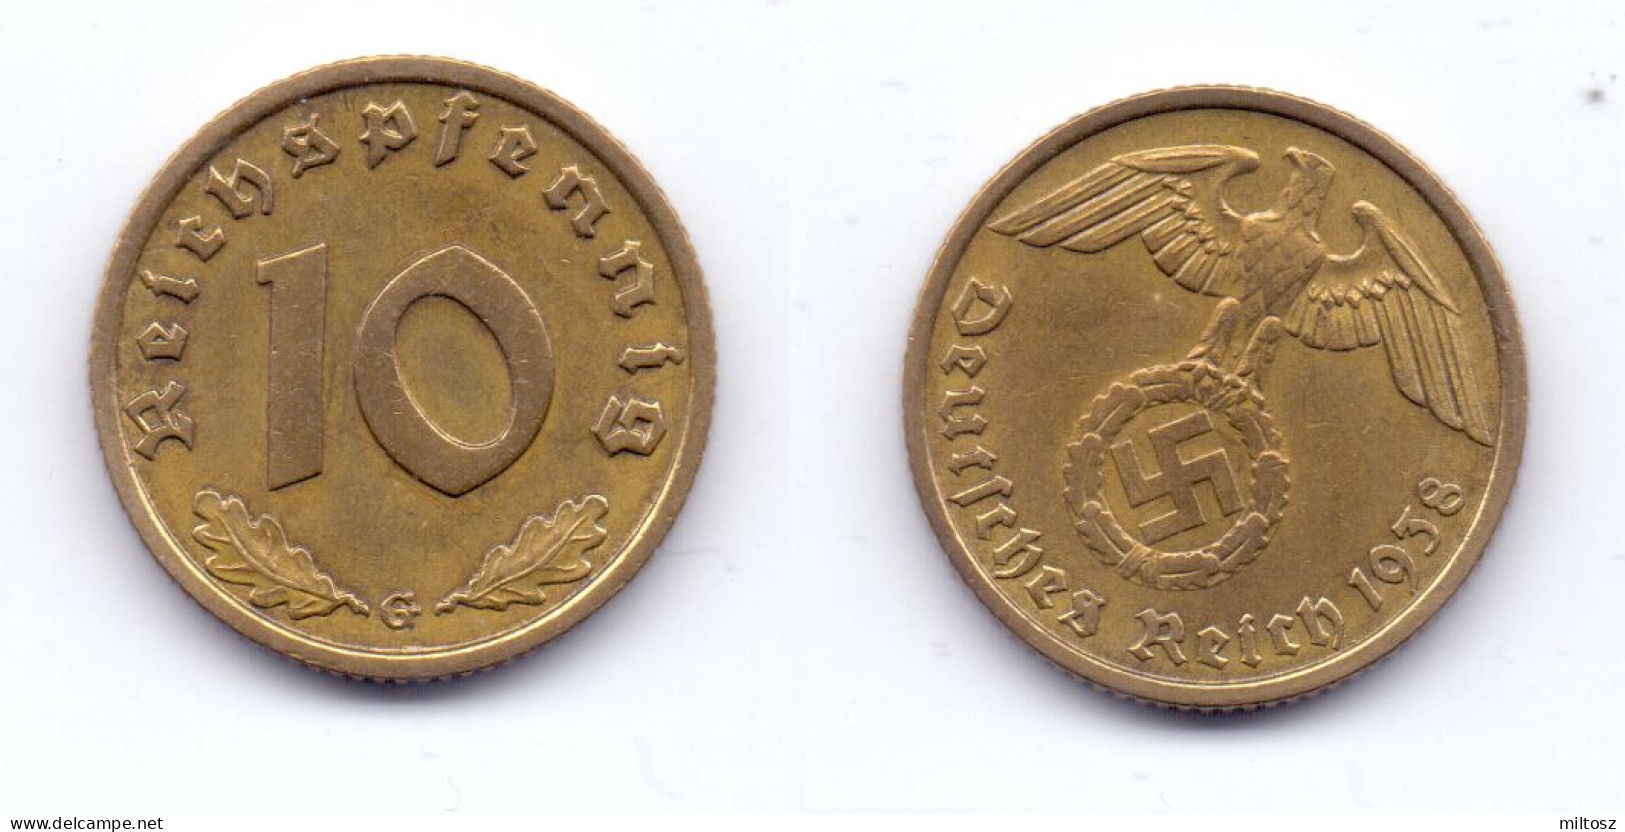 Germany 10 Reichspfennig 1938 G - 10 Reichspfennig